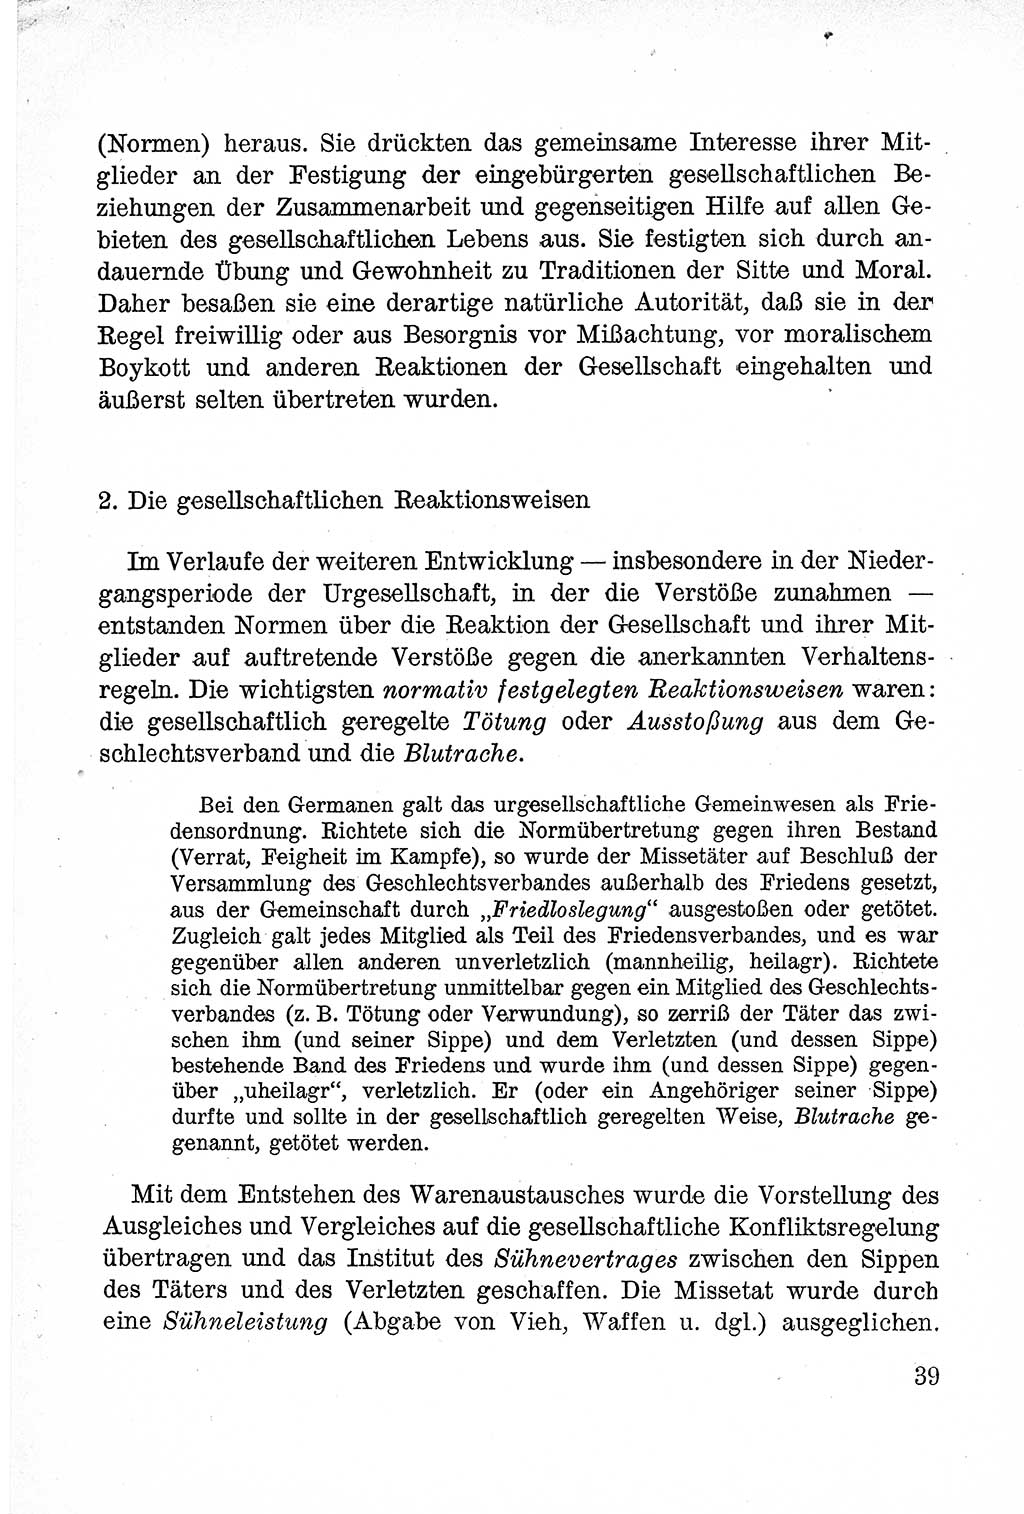 Lehrbuch des Strafrechts der Deutschen Demokratischen Republik (DDR), Allgemeiner Teil 1957, Seite 39 (Lb. Strafr. DDR AT 1957, S. 39)